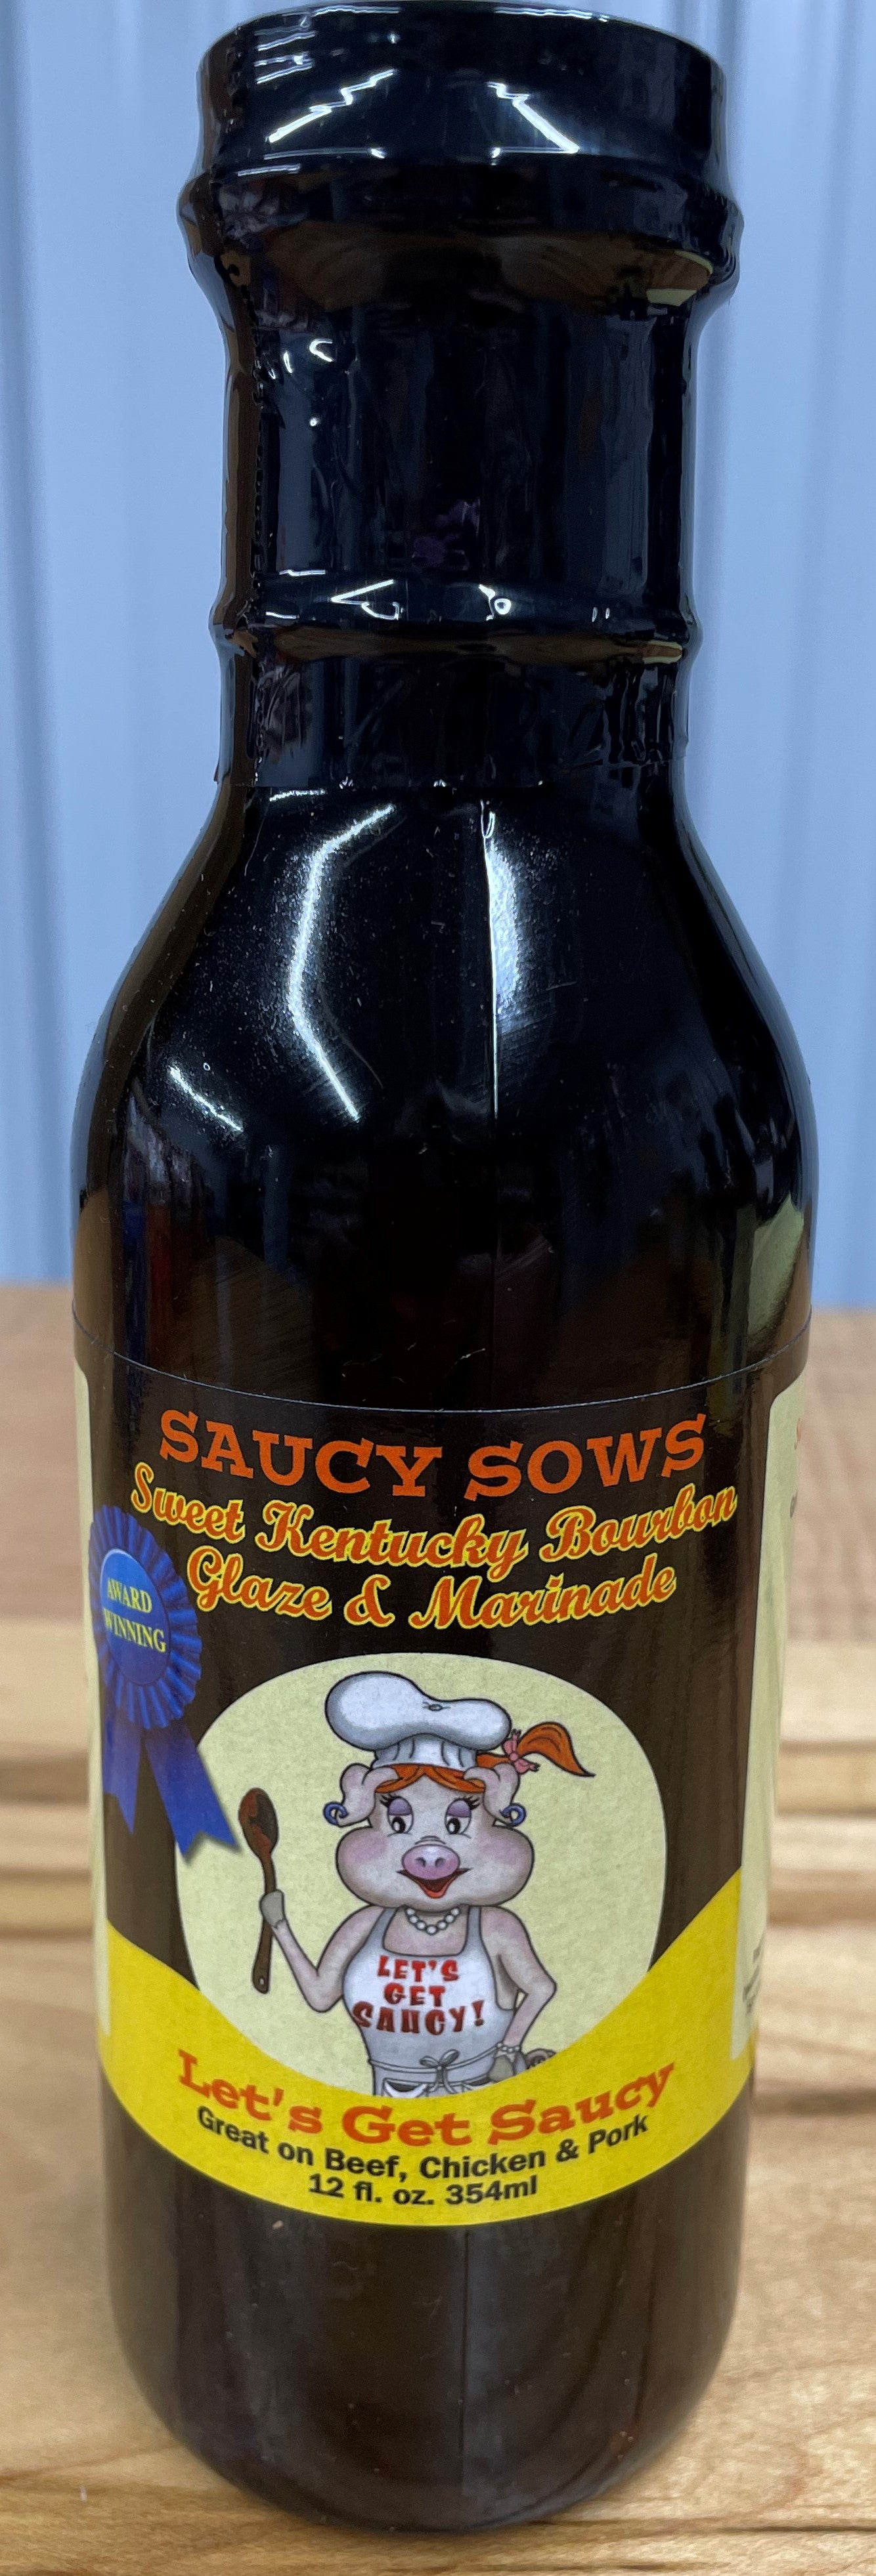 Saucy Sows Sweet Kentucky Bourbon Glaze & Marinade